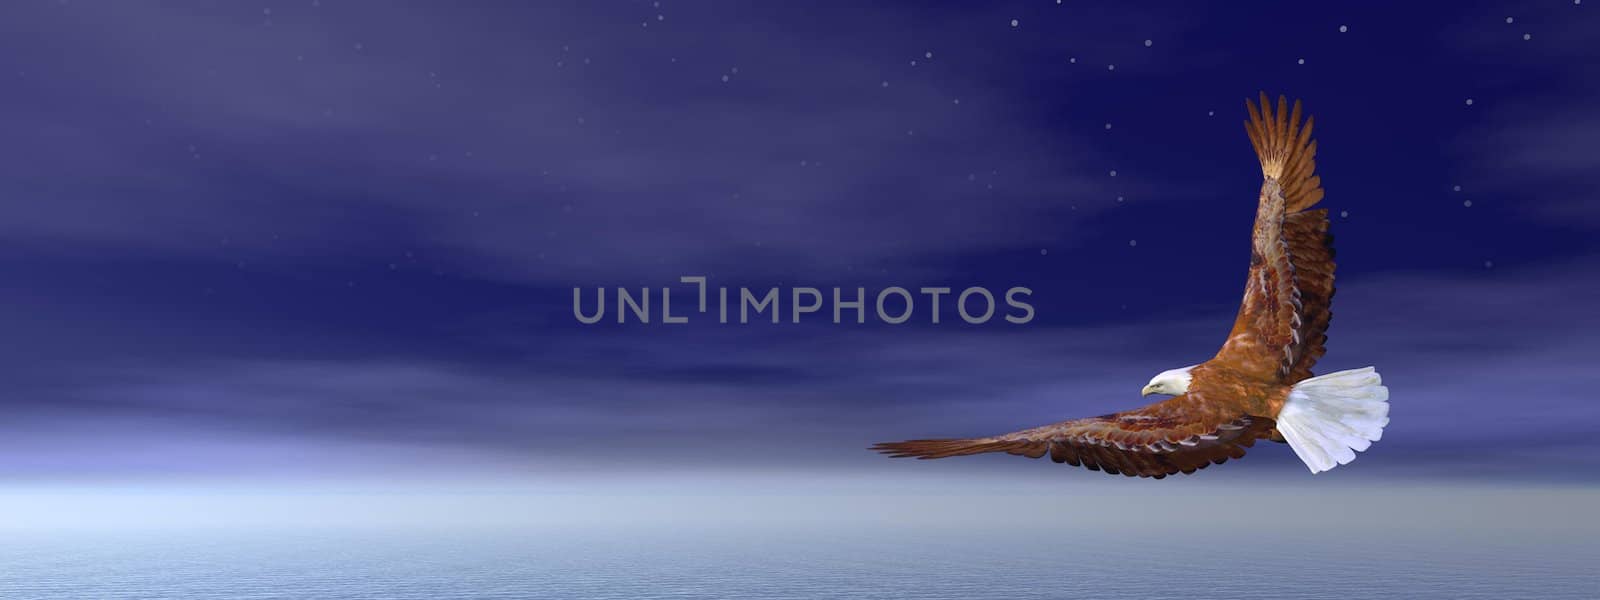 Bald eagle flying in deep blue sky - 3D render